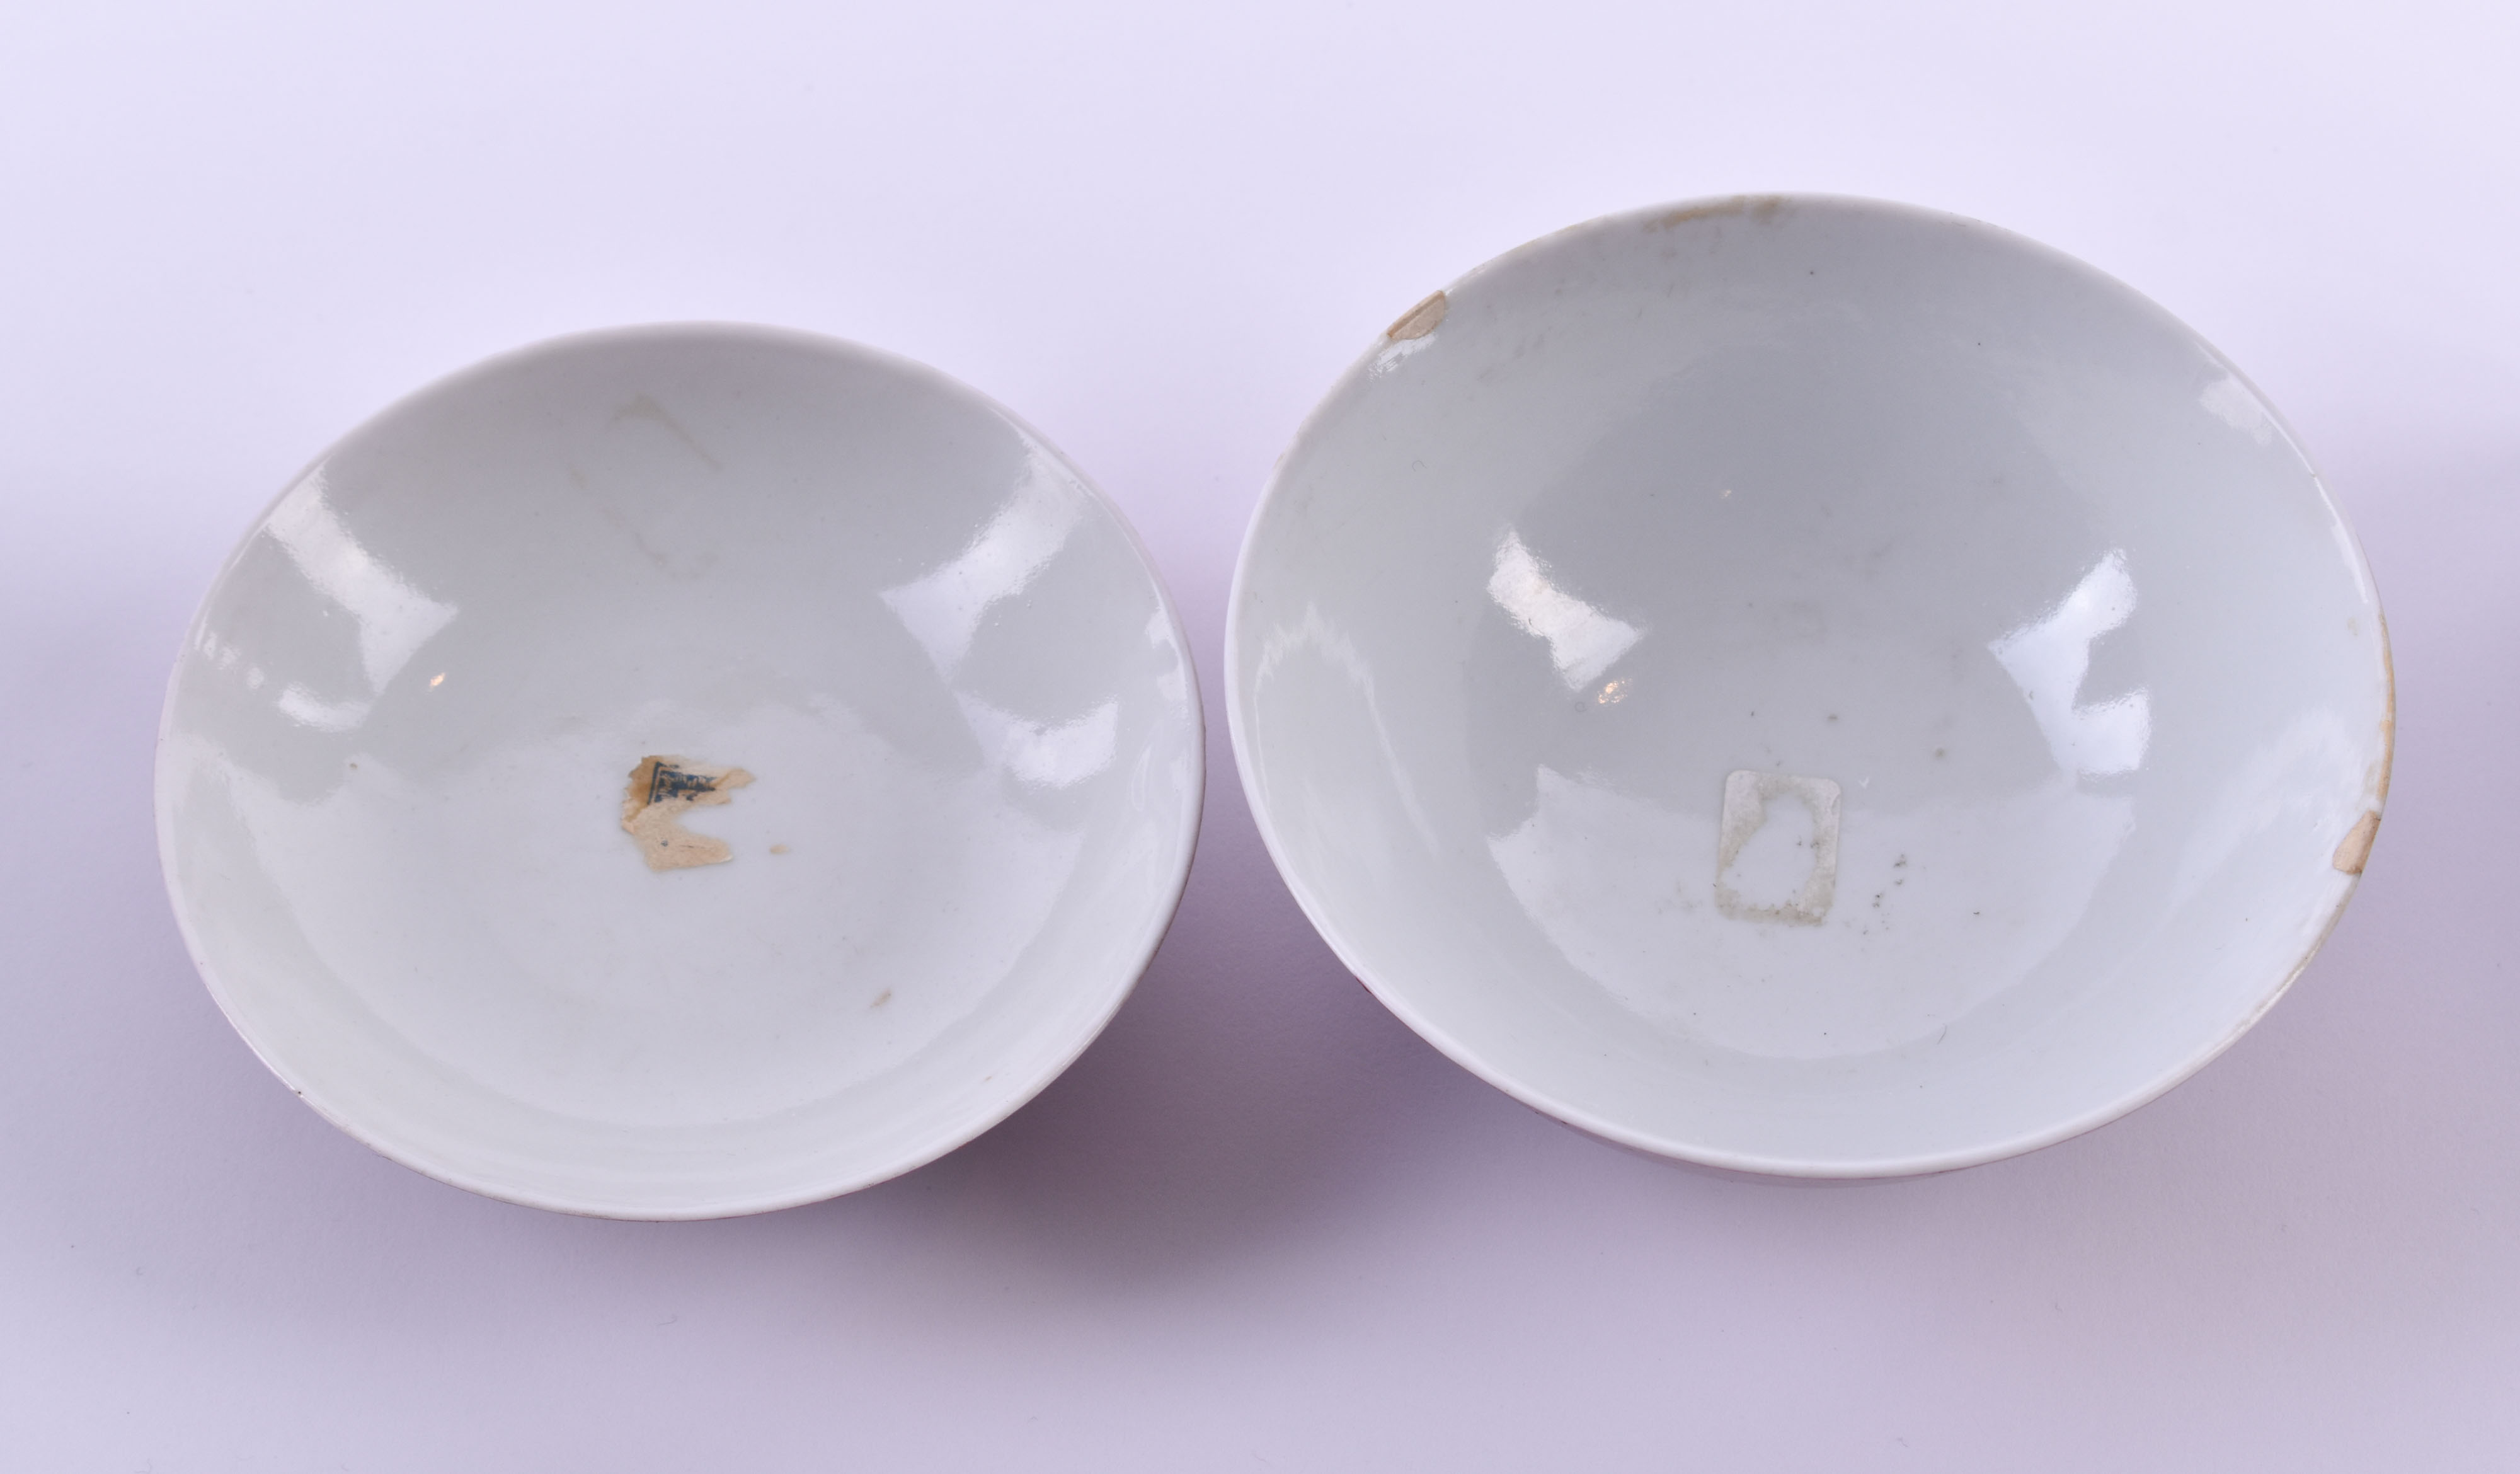  Tea bowl China Qing dynasty - Image 7 of 10